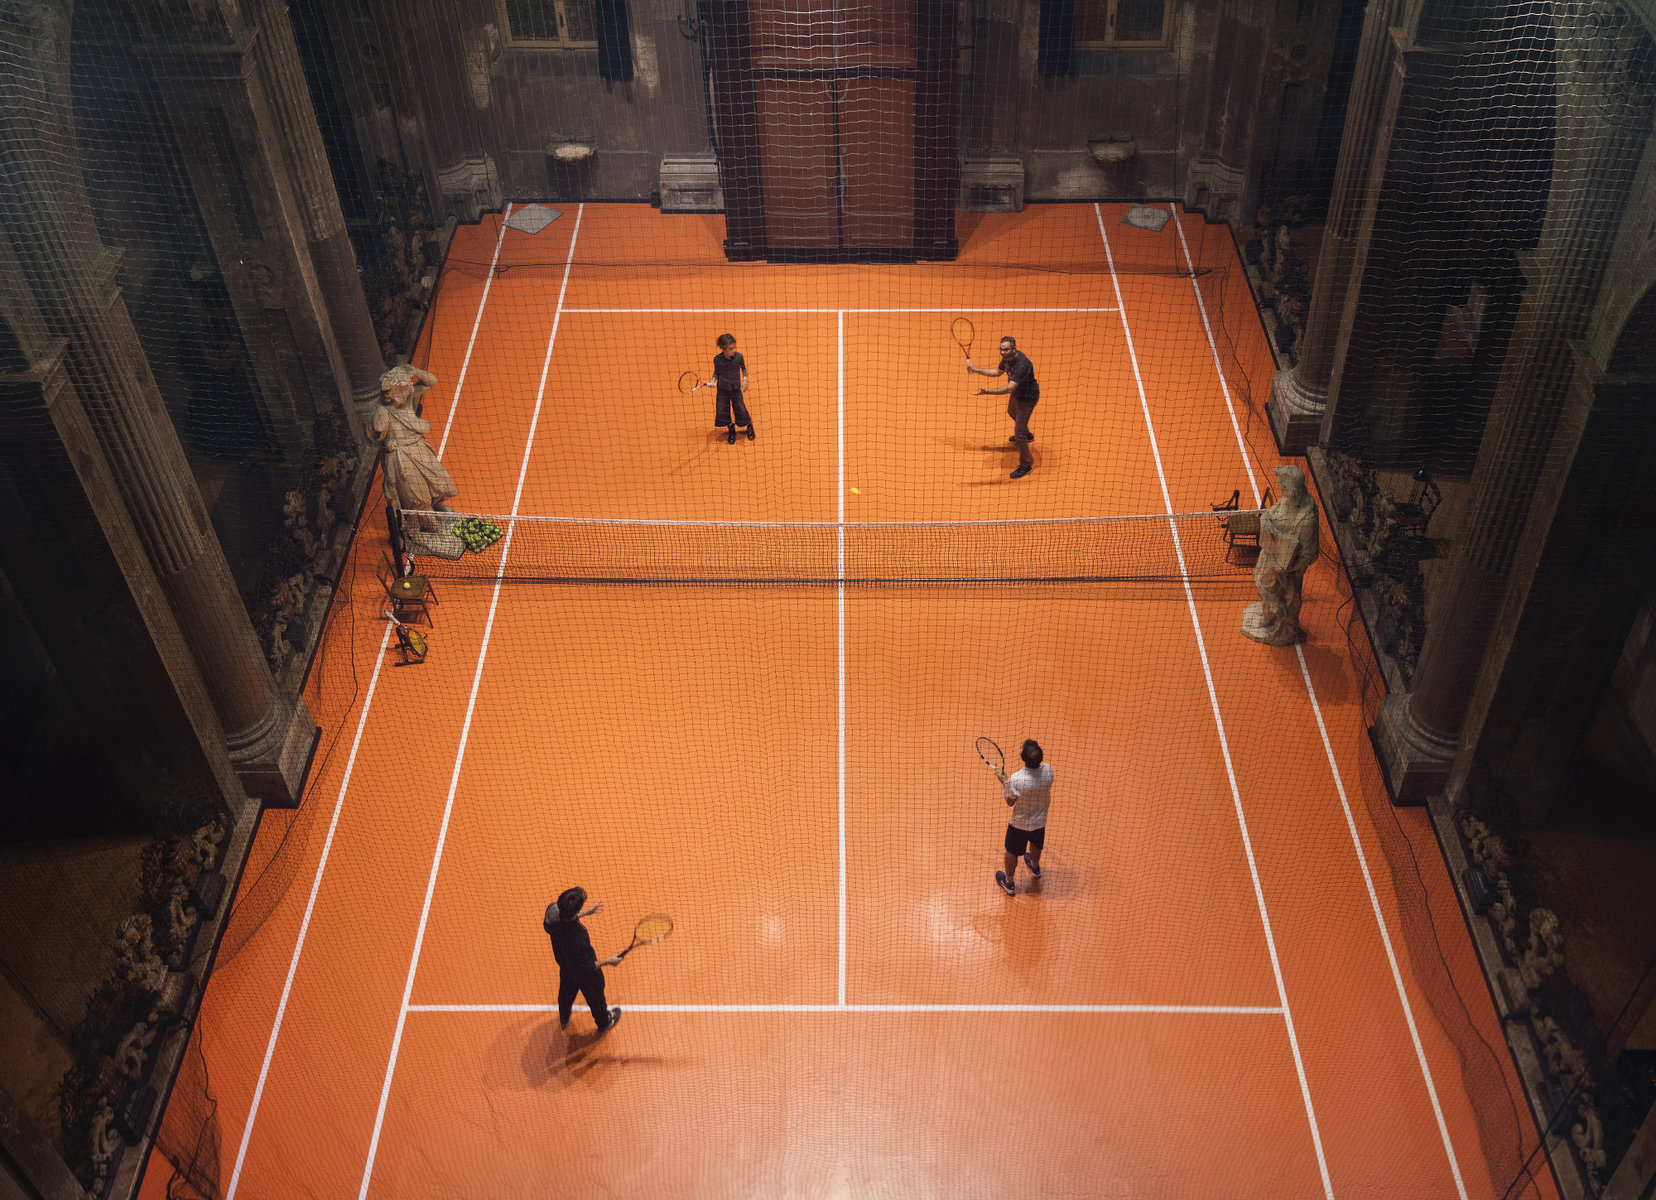 Βάλανε γήπεδο τένις ΜΕΣΑ σε ναό του 16ου αιώνα.